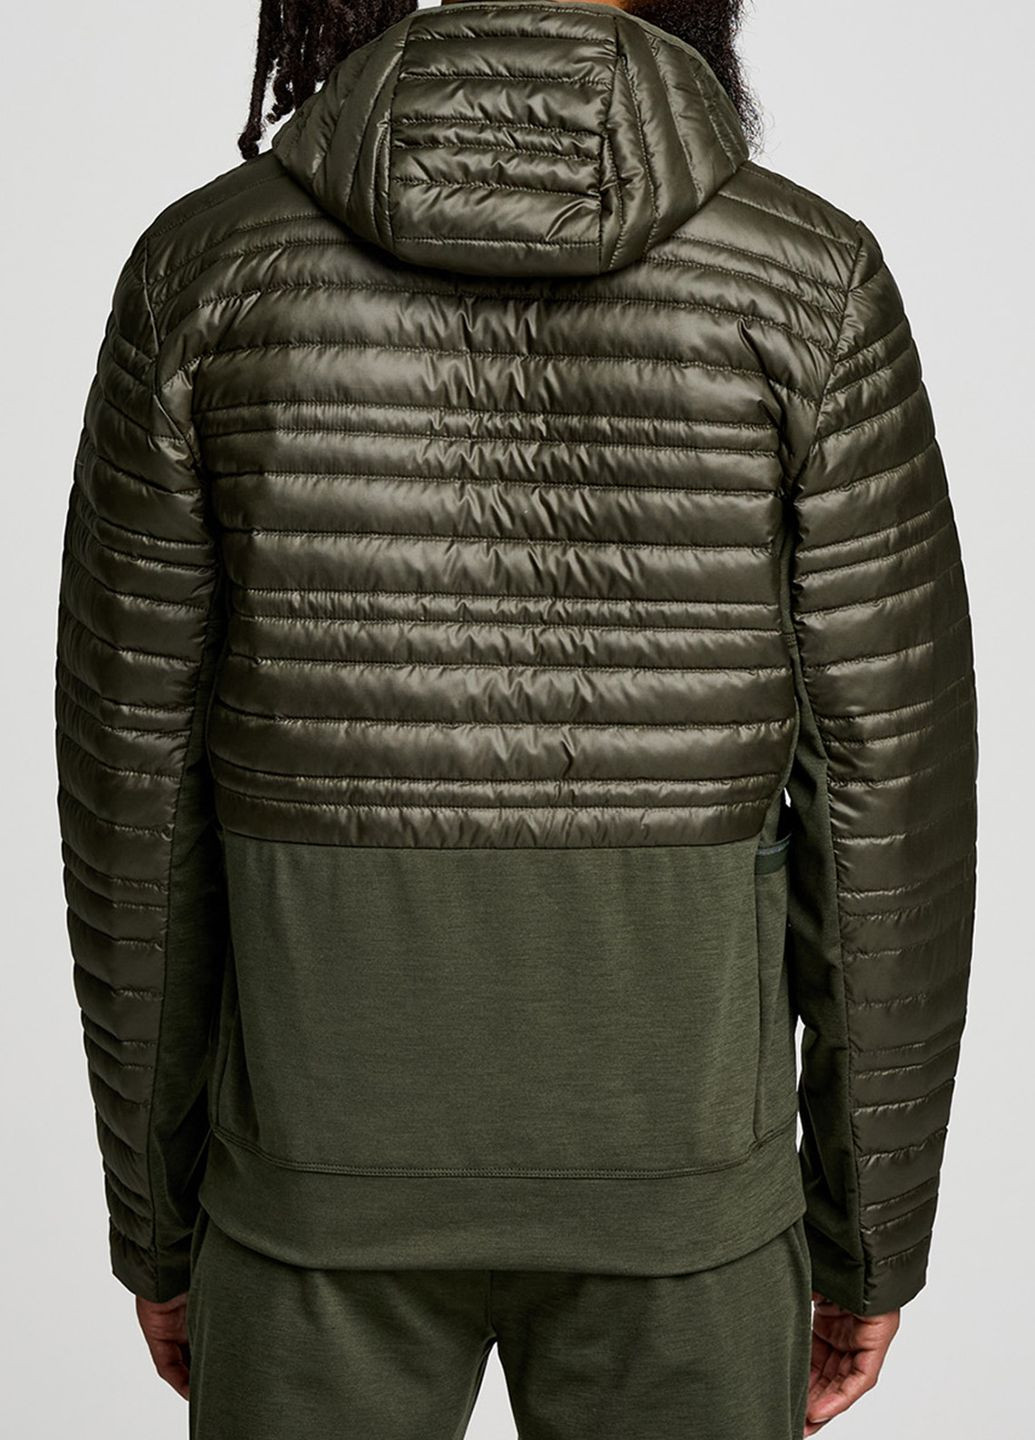 Оливковая (хаки) демисезонная спортивная куртка цвета хаки solstice oysterpuff jacket Saucony